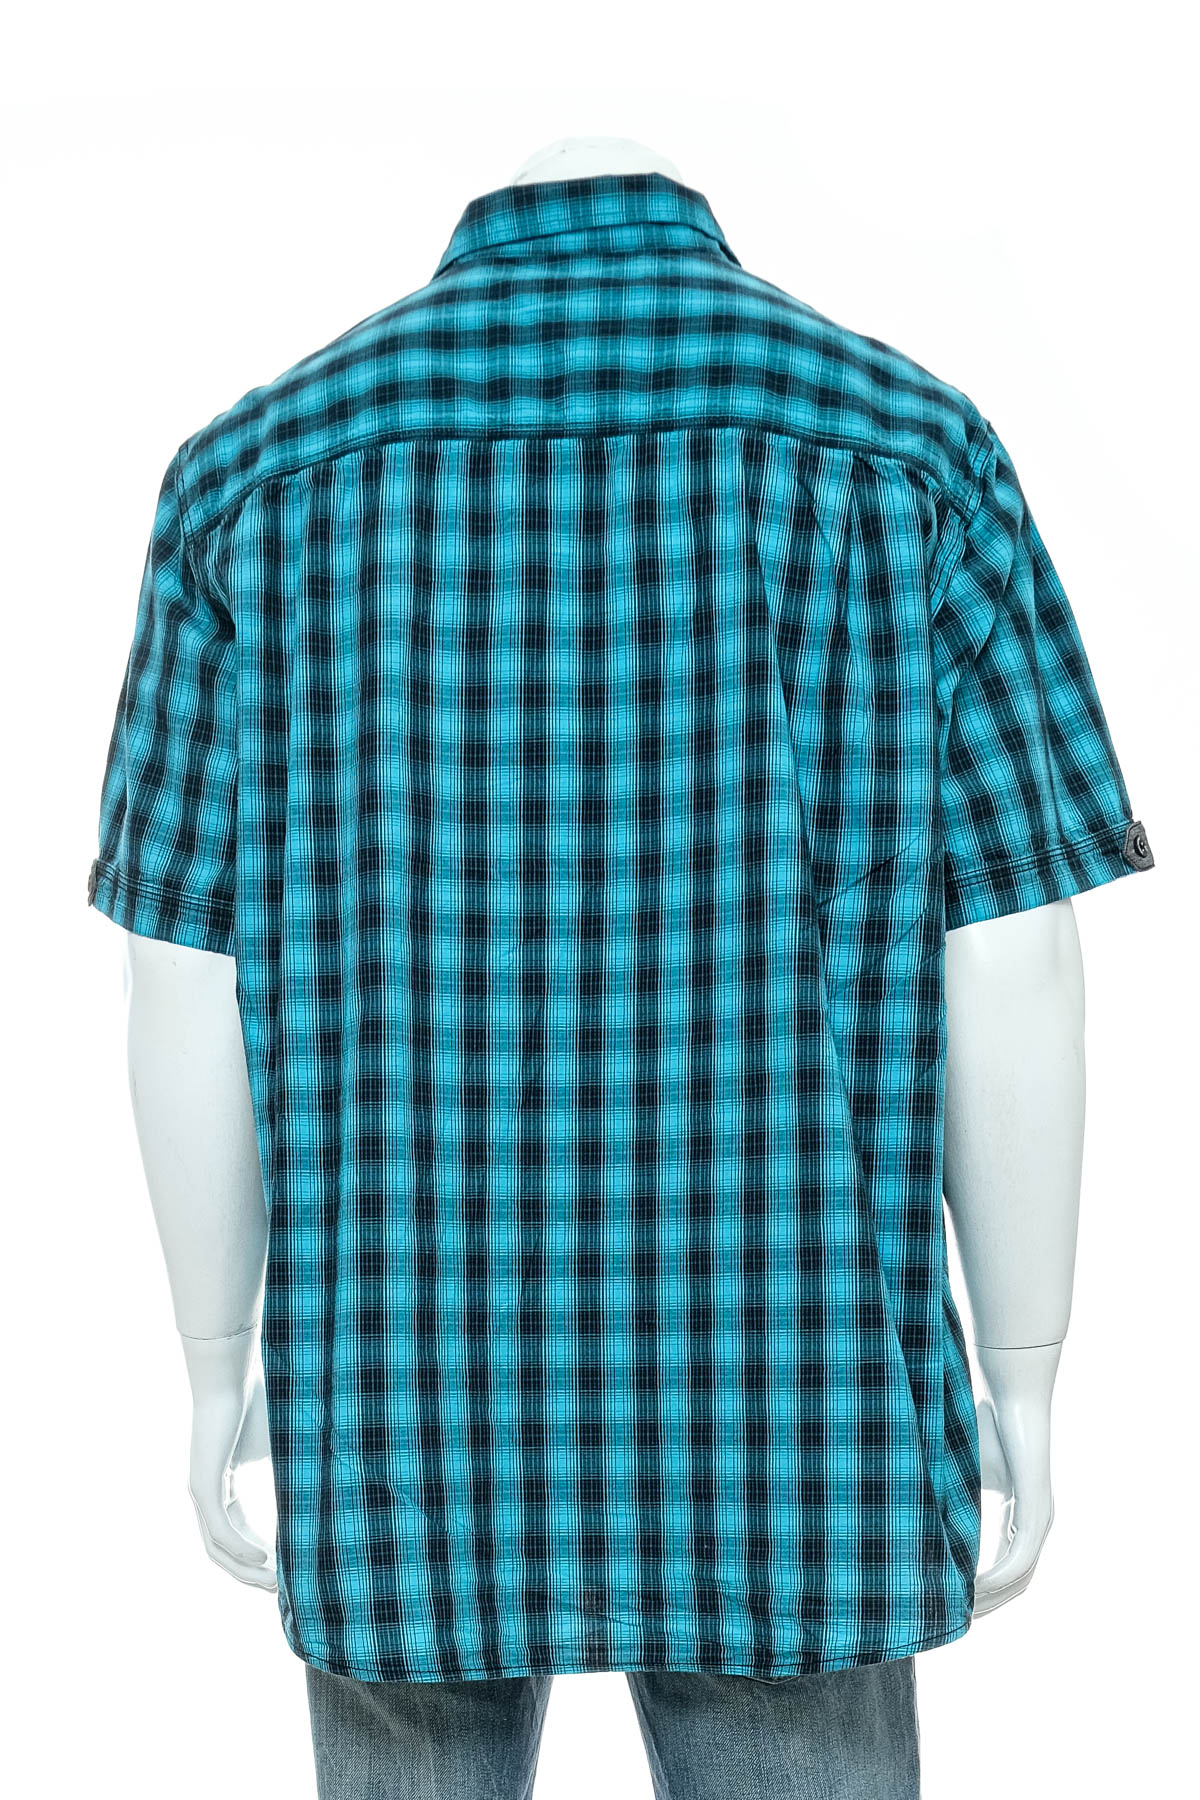 Ανδρικό πουκάμισο - Angelo Litrico - 1